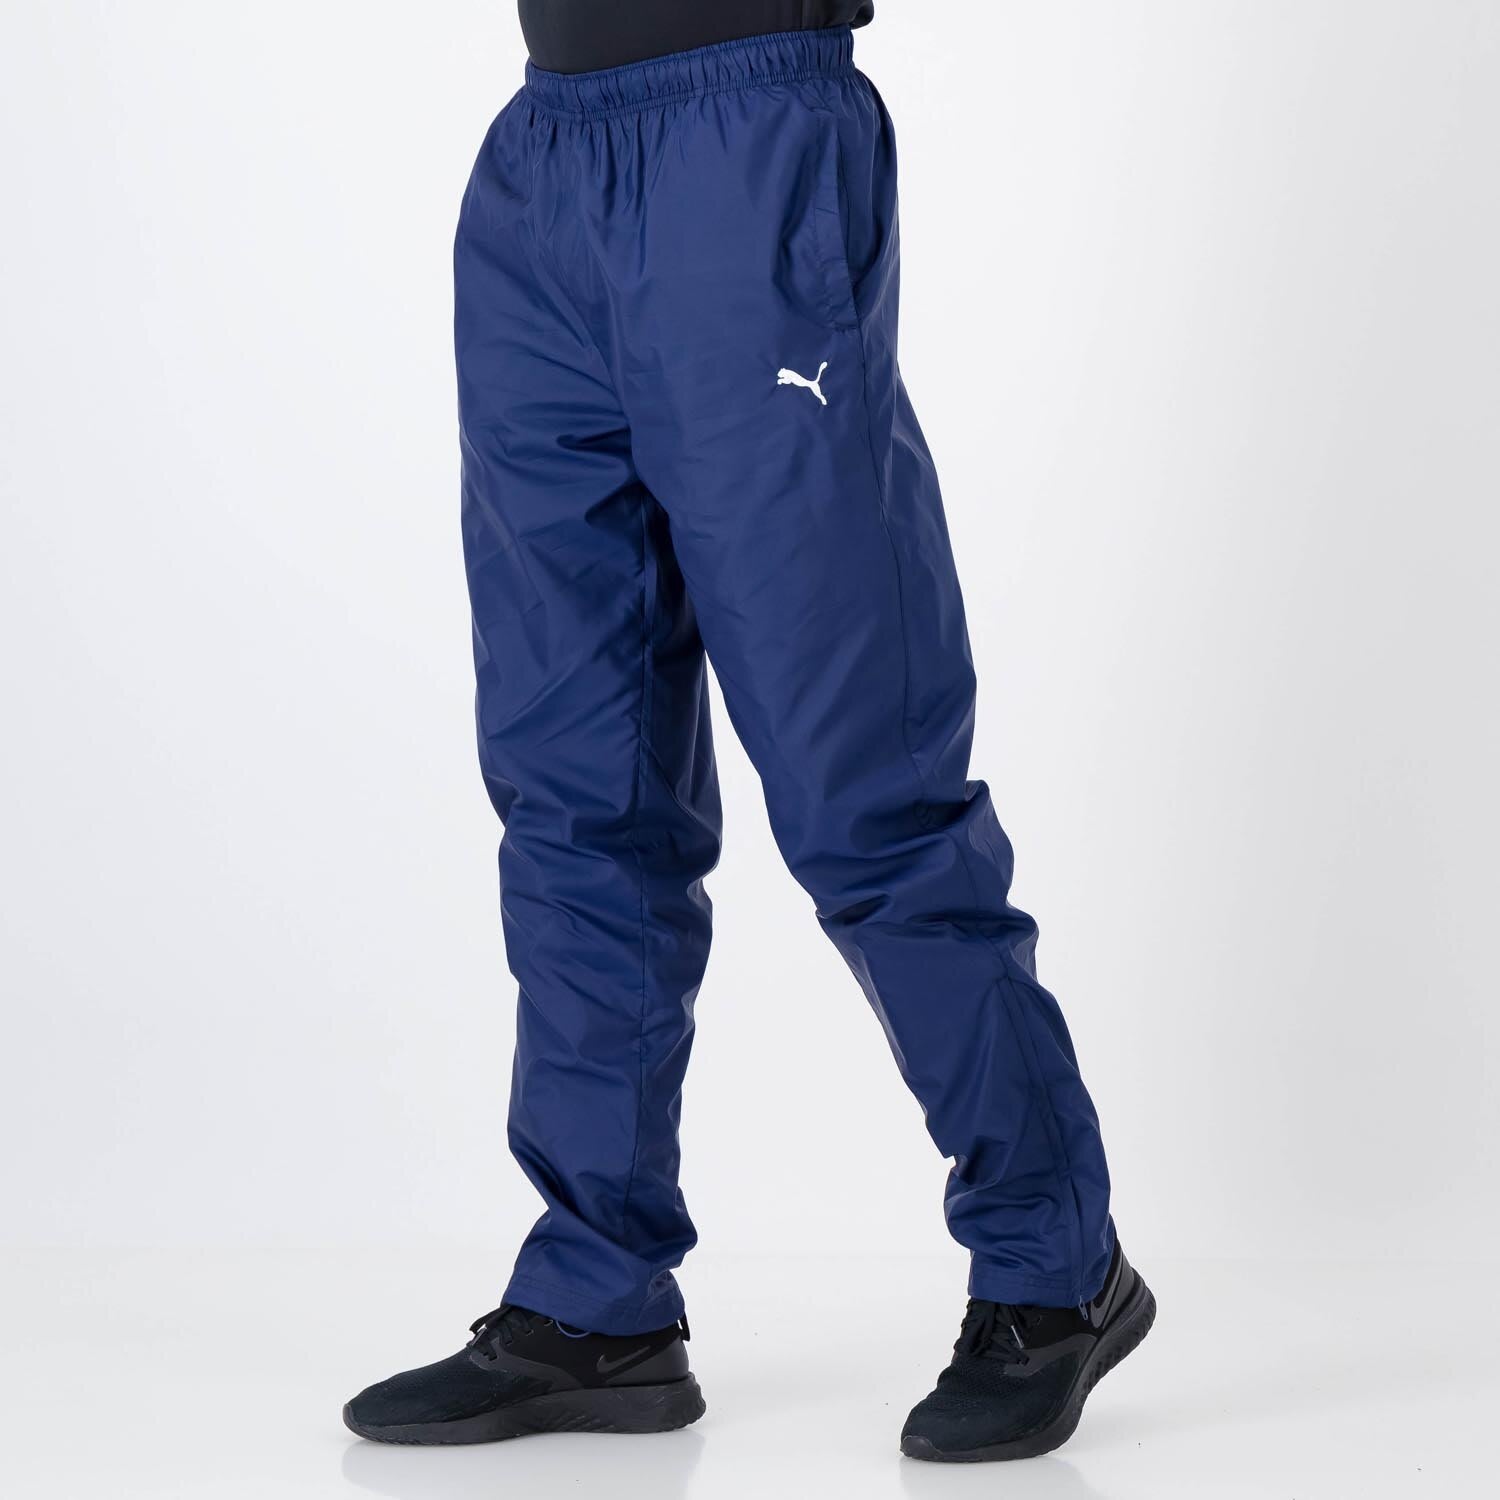 Buy Puma Black Solid Regular Fit Track Pants for Men Online  Tata CLiQ